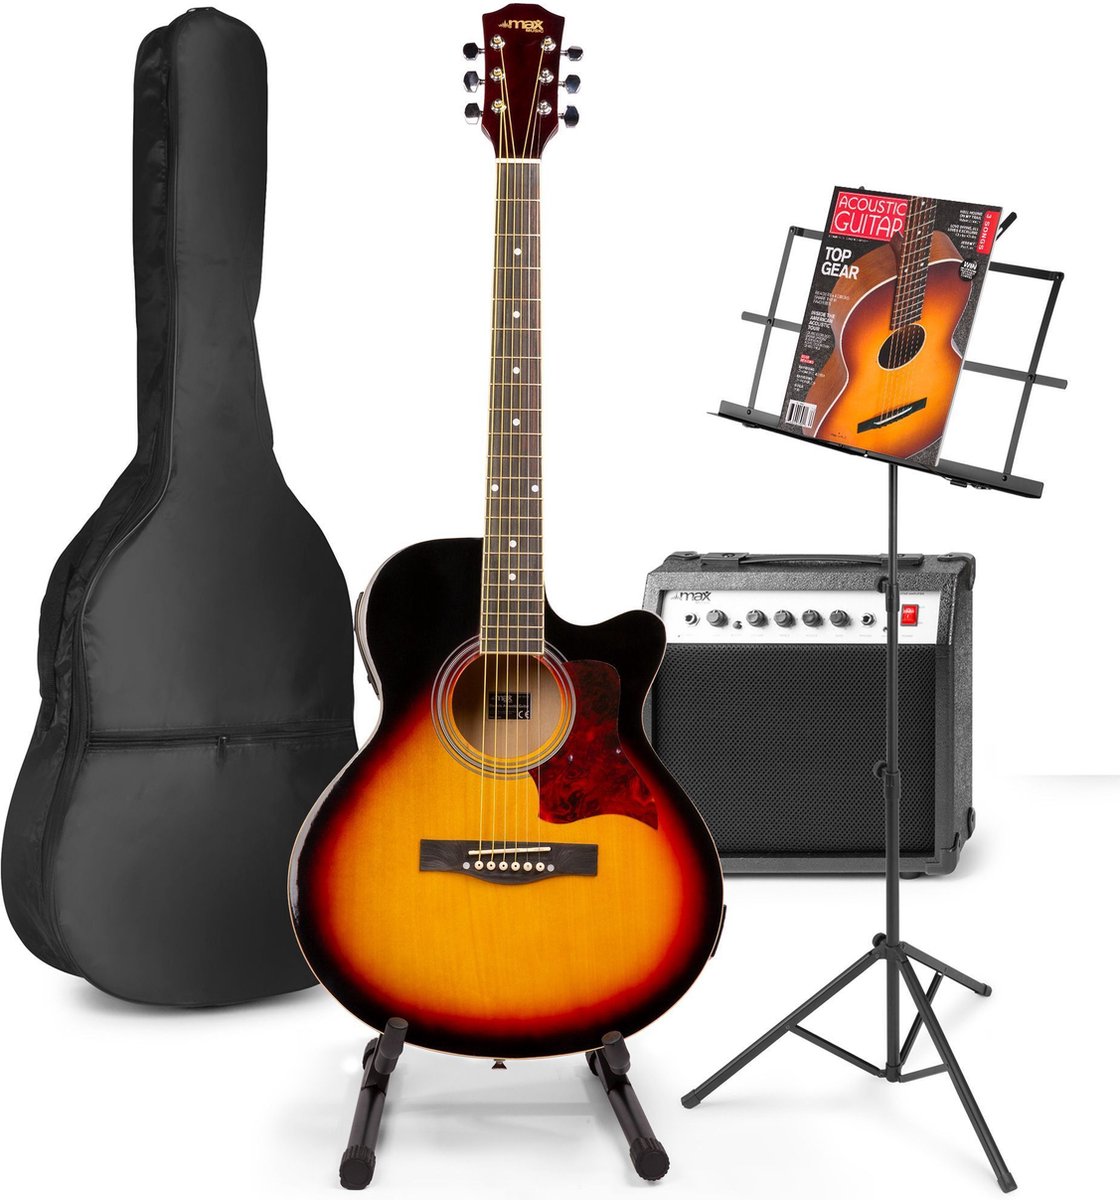 Elektrisch akoestische gitaar - MAX ShowKit gitaarset met o.a 40W gitaar versterker, gitaar standaard, muziekstandaard en gitaar stemapparaat - Sunburst